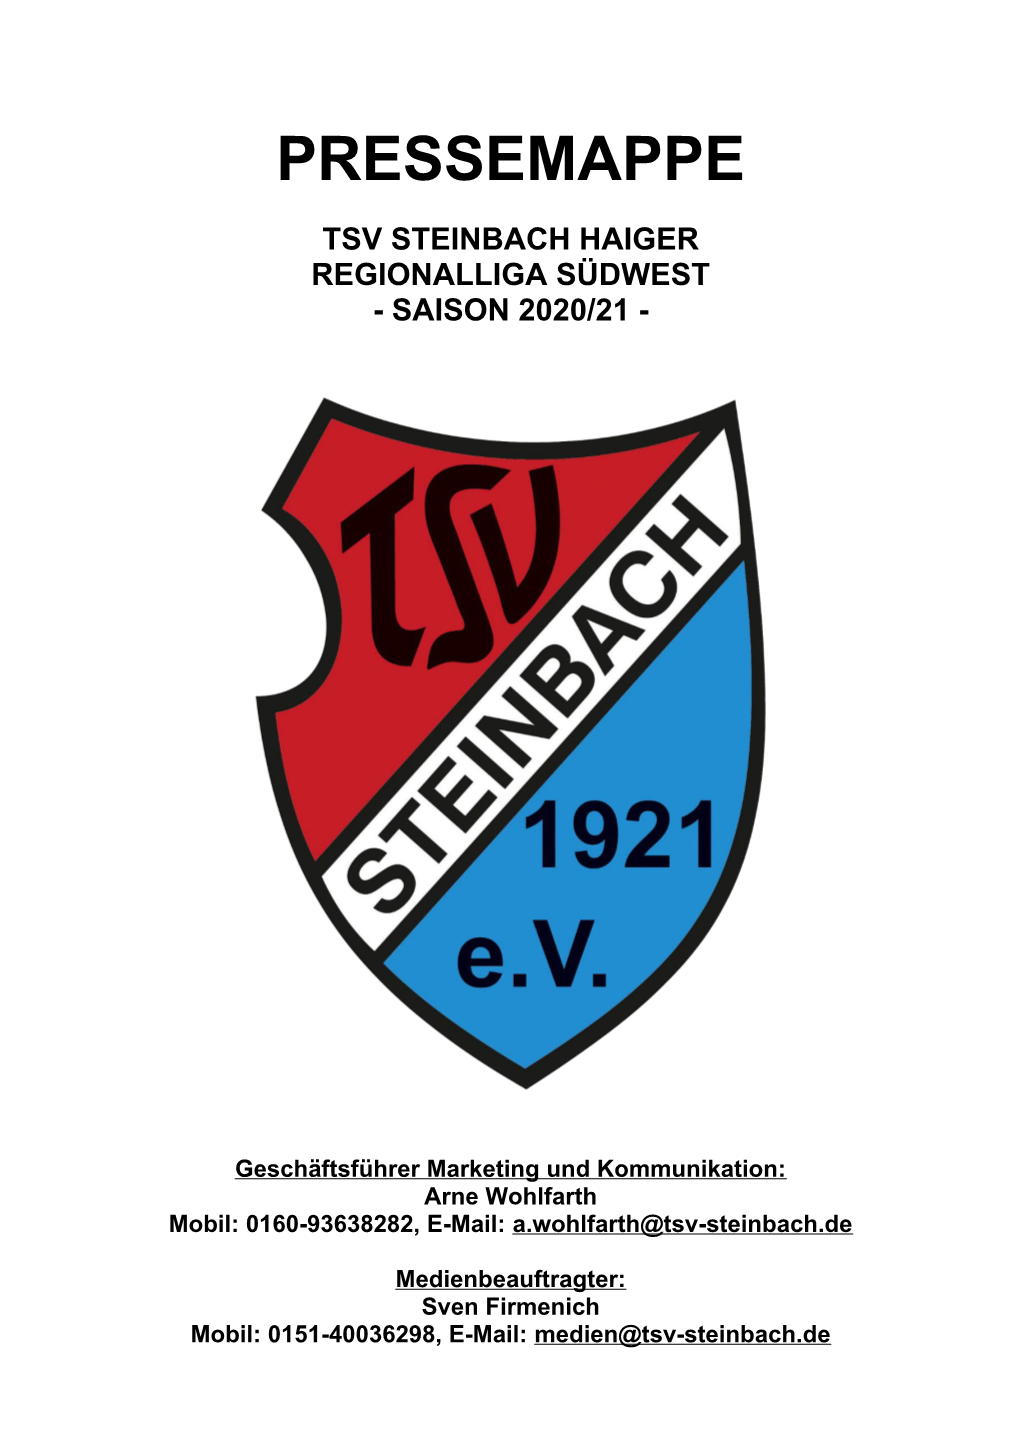 Pressemappe Tsv Steinbach Haiger Regionalliga Südwest